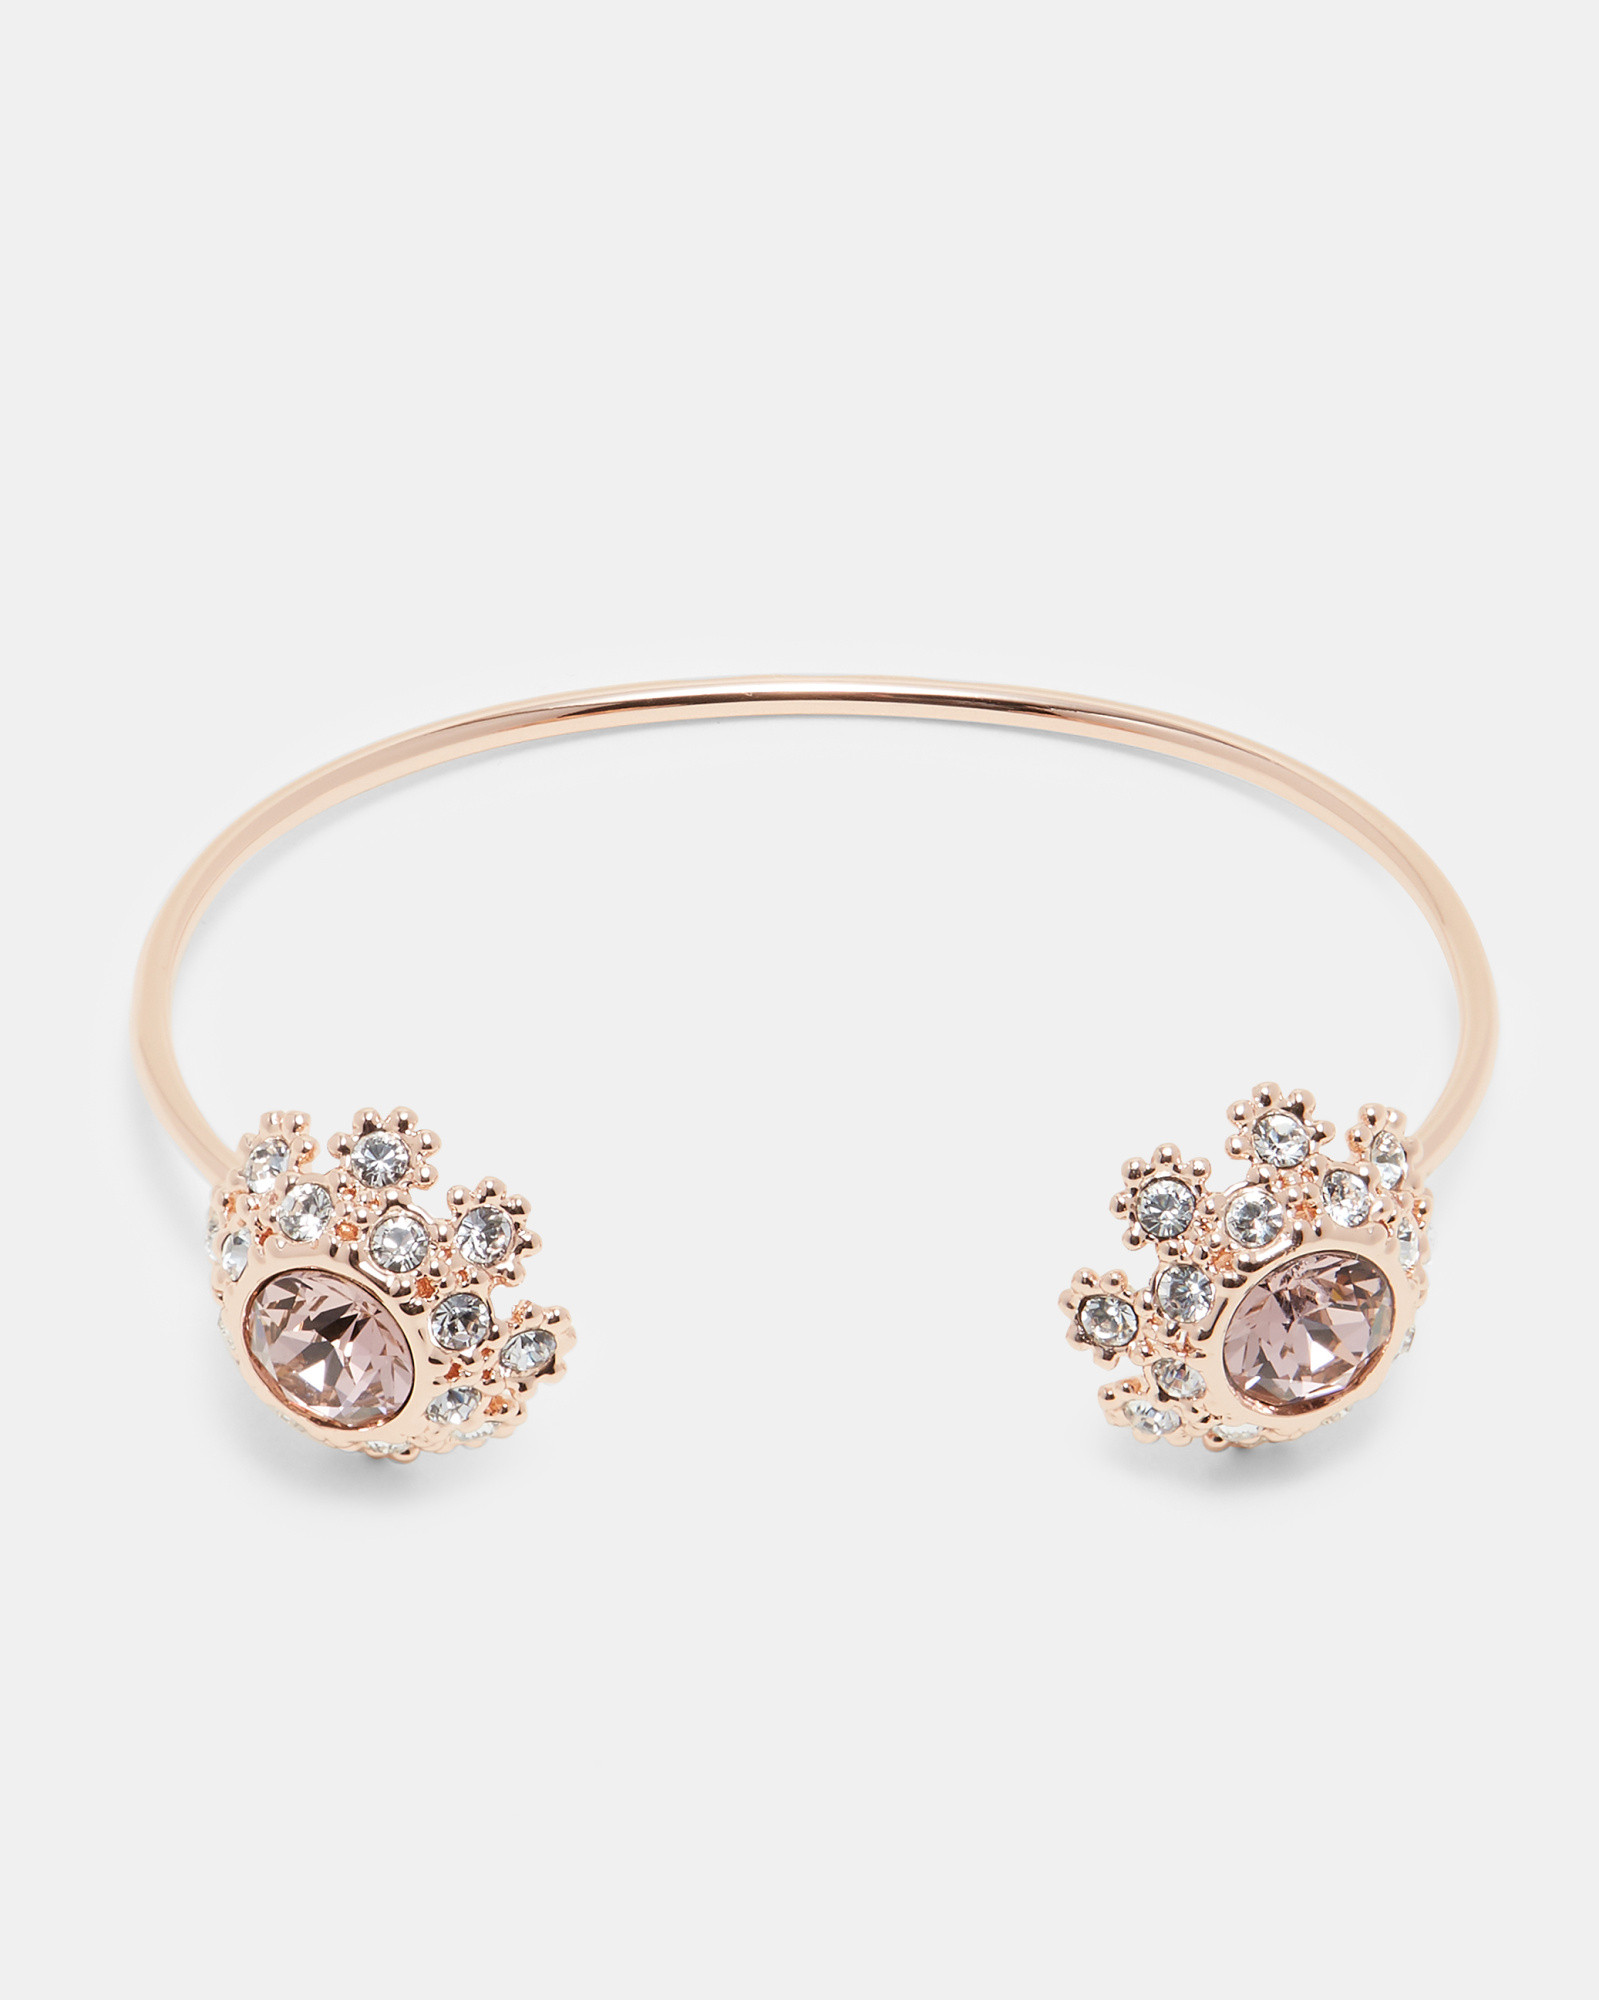 SENIIE Swarovski® daisy lace cuff bracelet